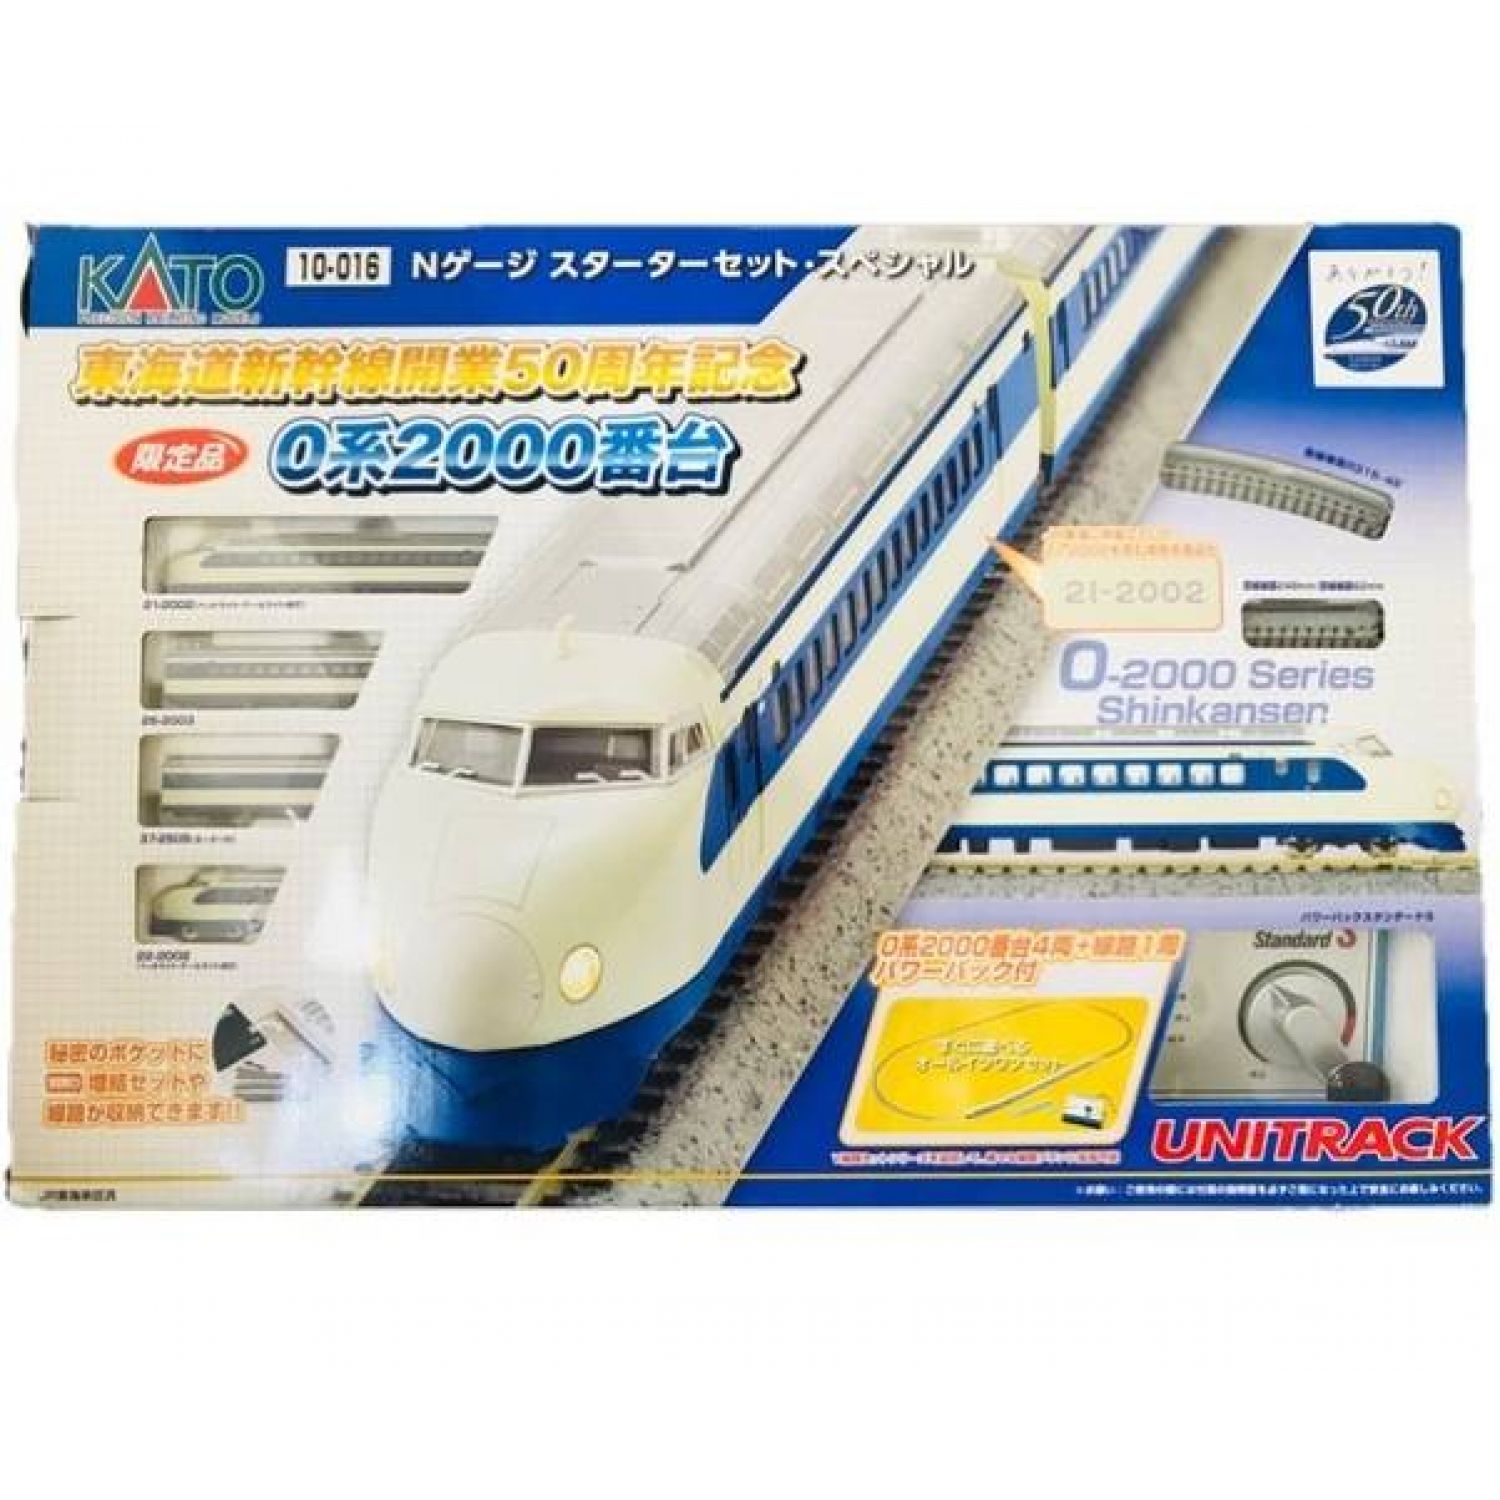 KATO Nゲージ スターターセットスペシャル - 鉄道模型